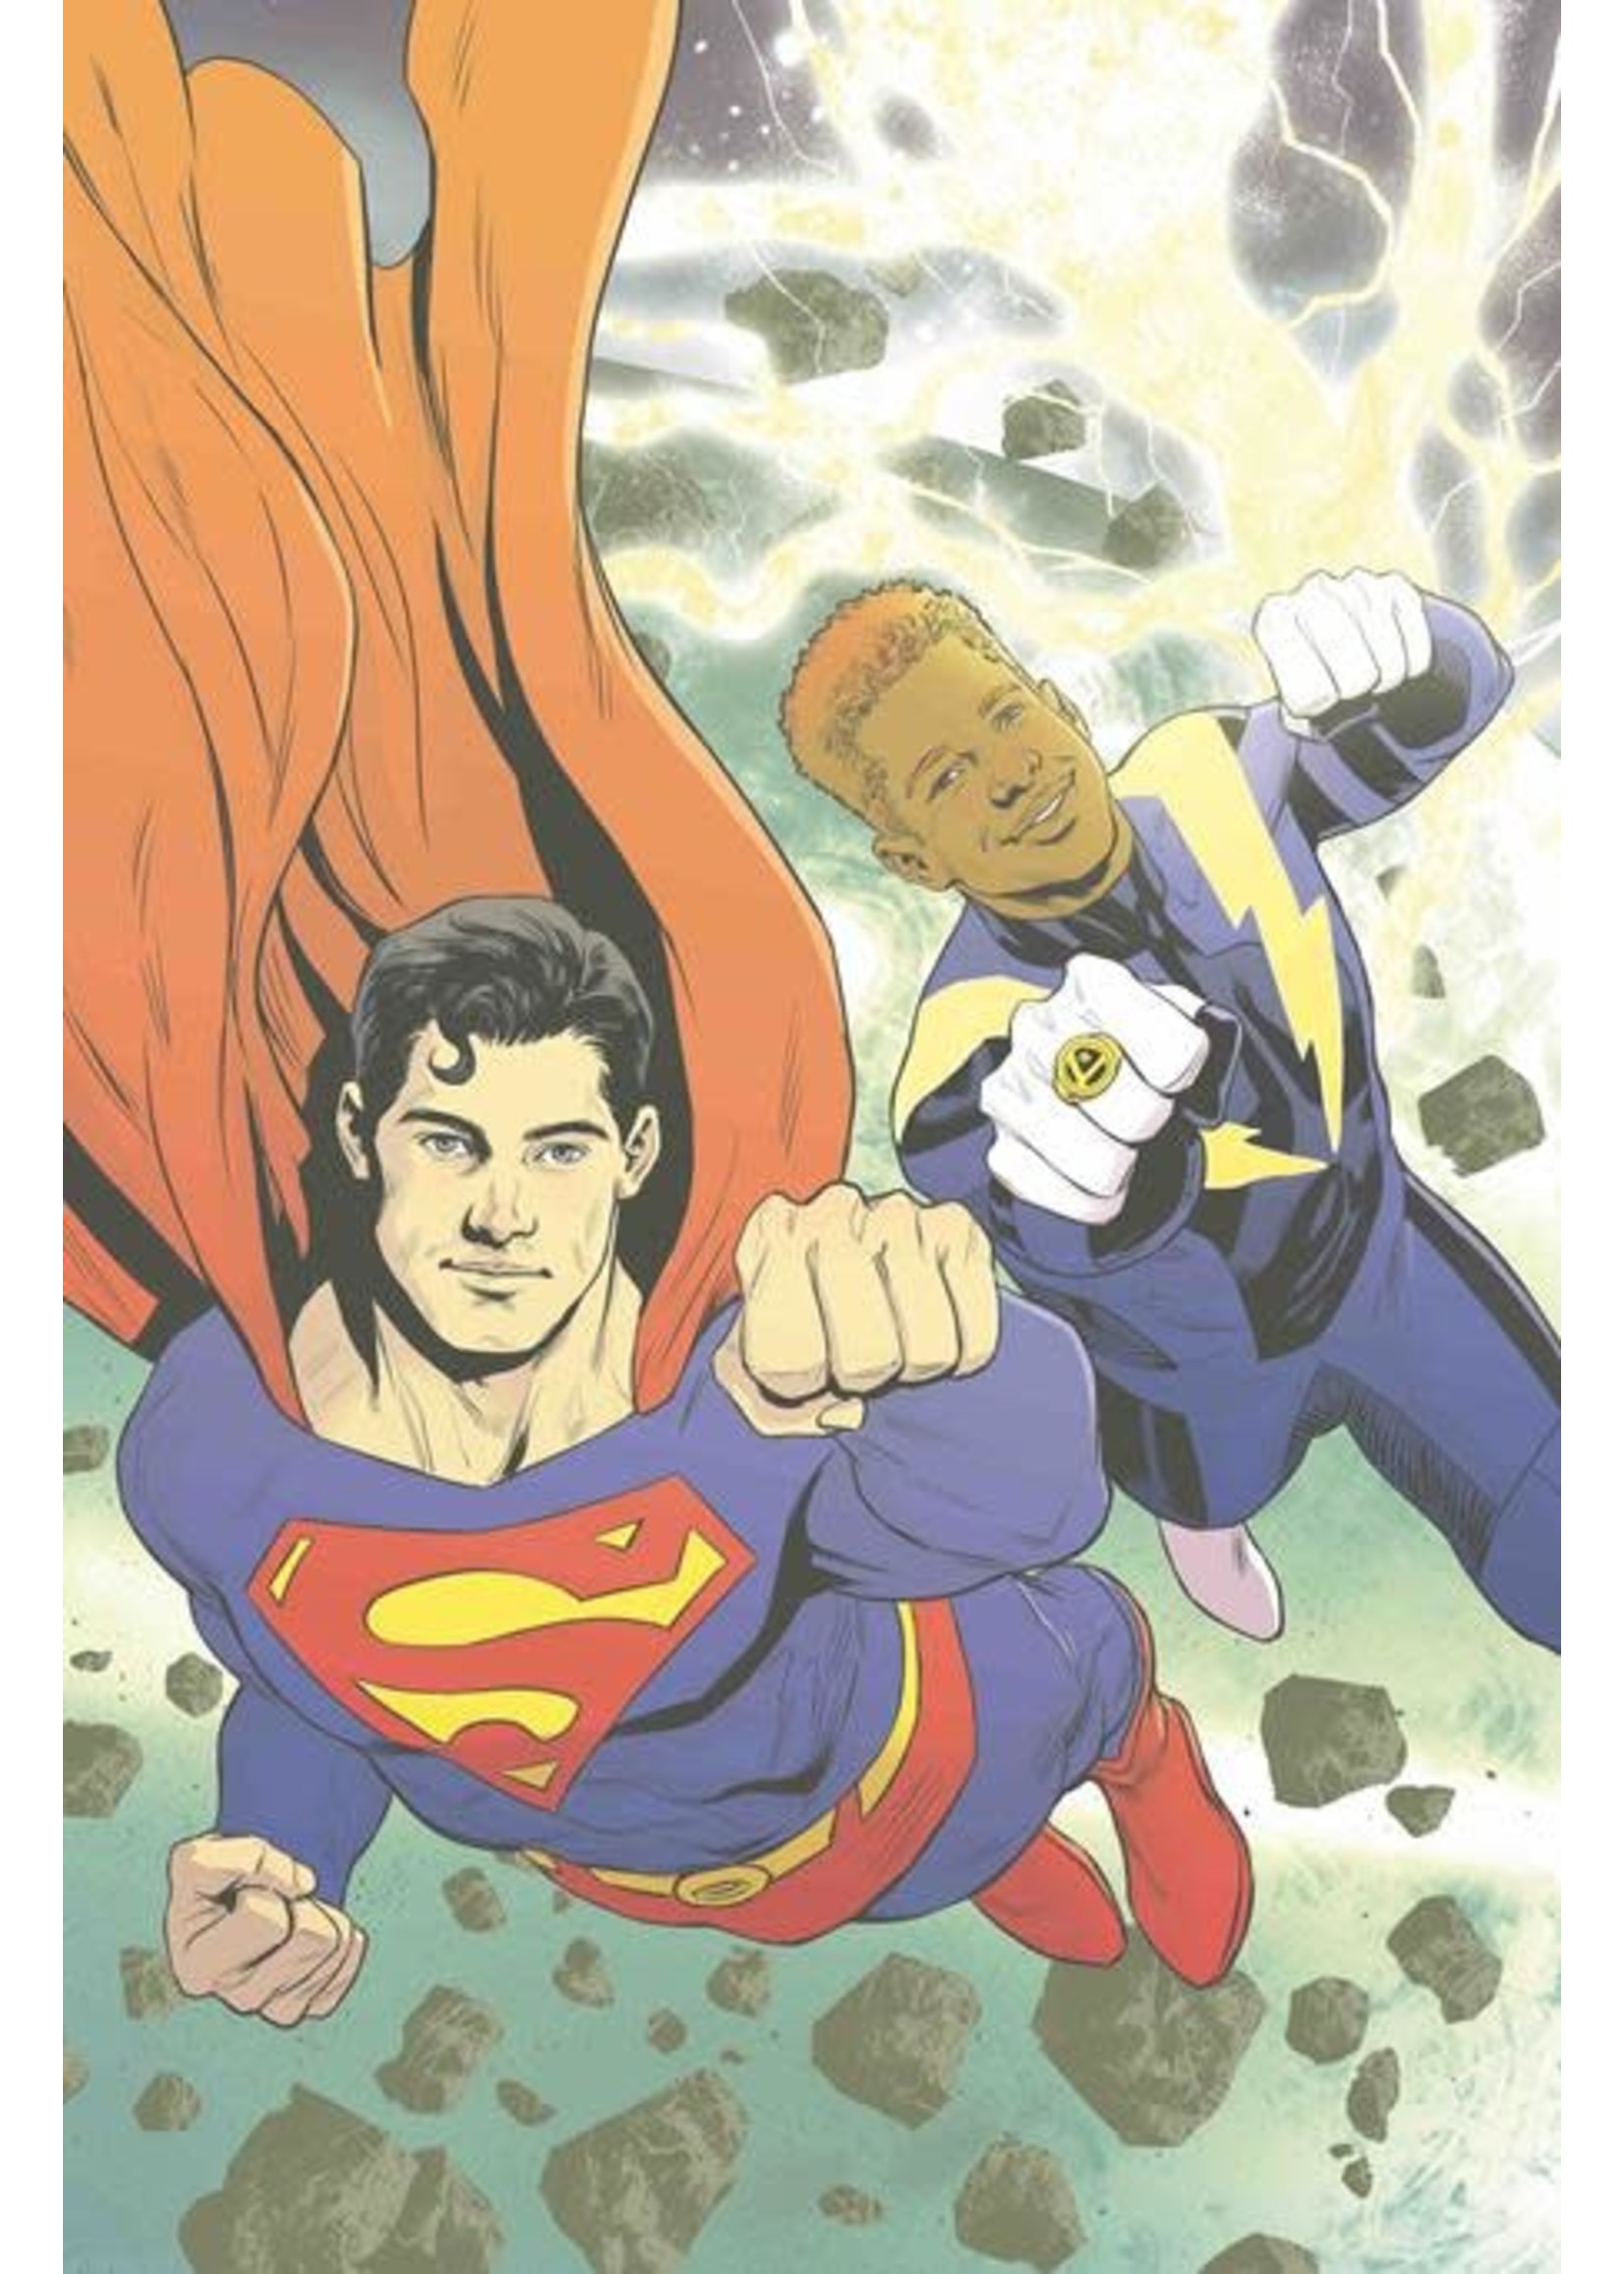 DC COMICS JUSTICE LEAGUE VS LEGION OF SUPER- HEROES #1 CVR B